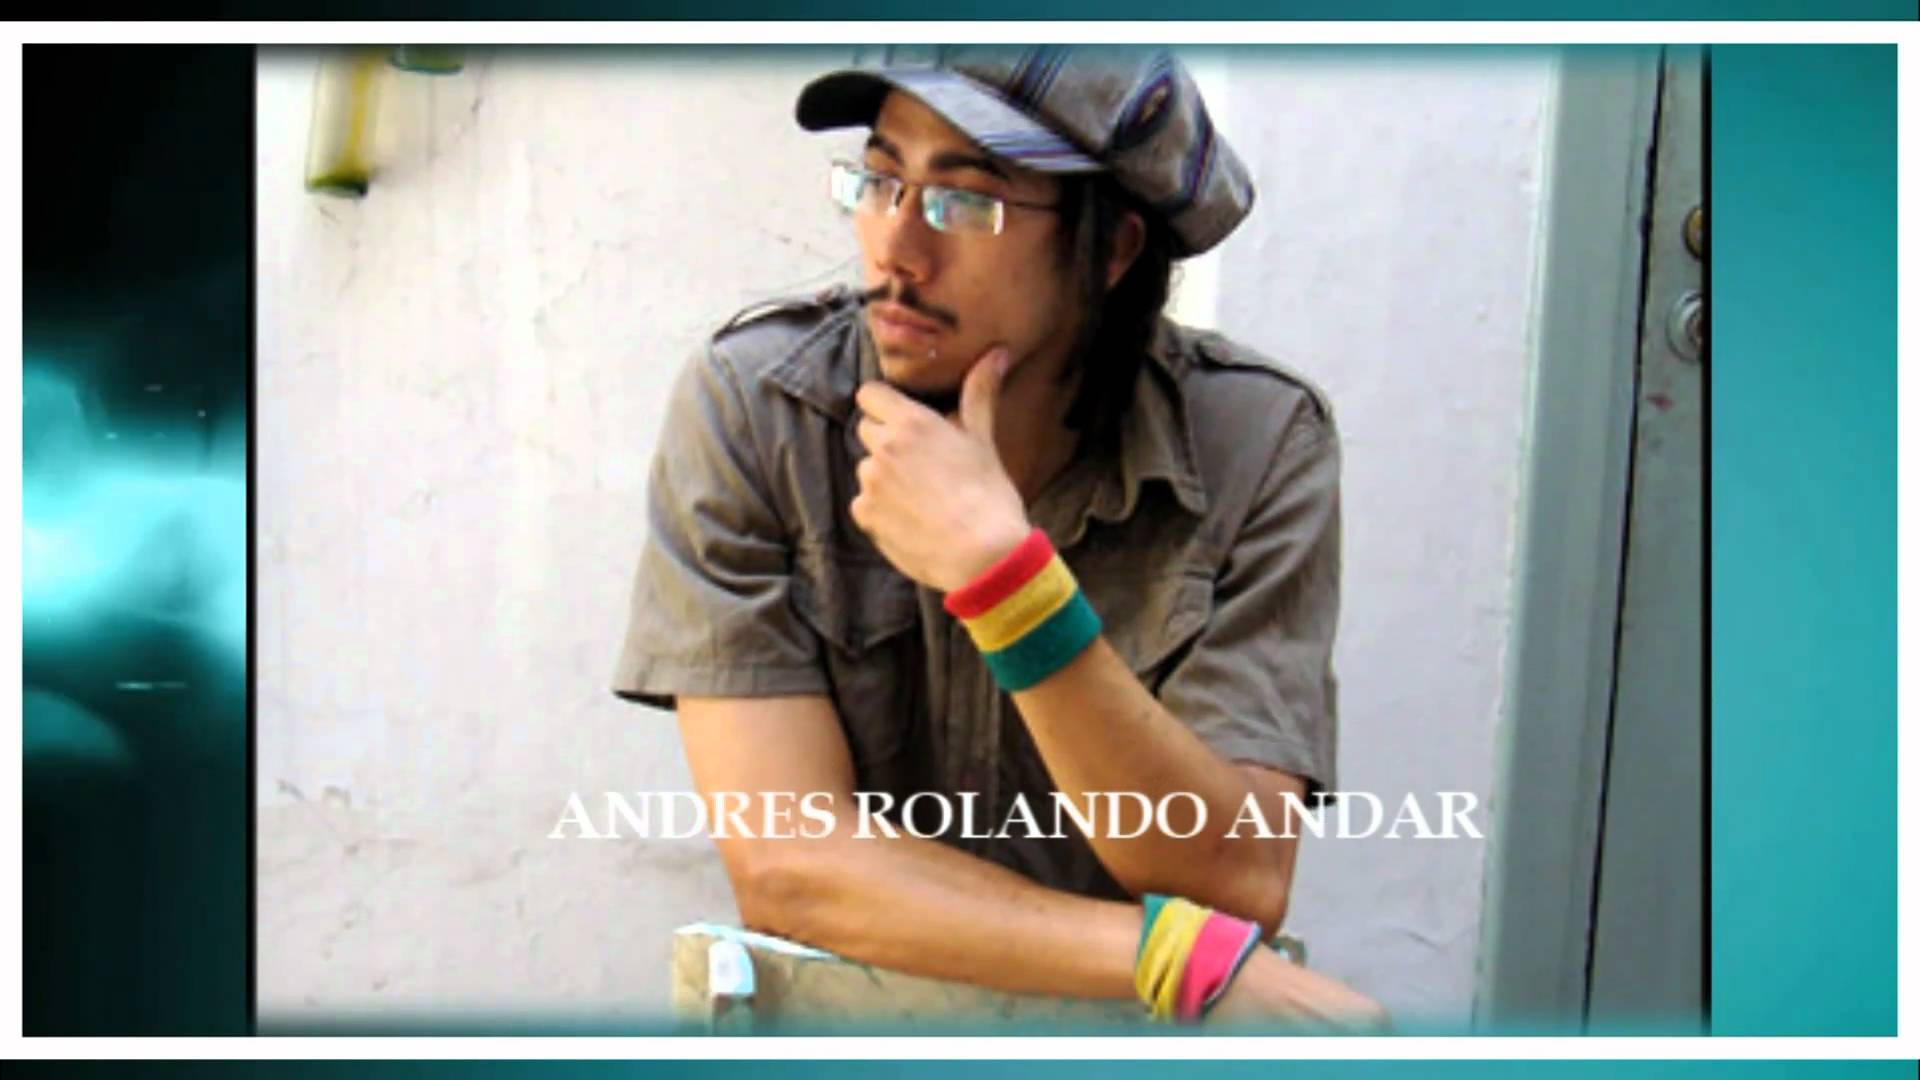 Andrés Rolando